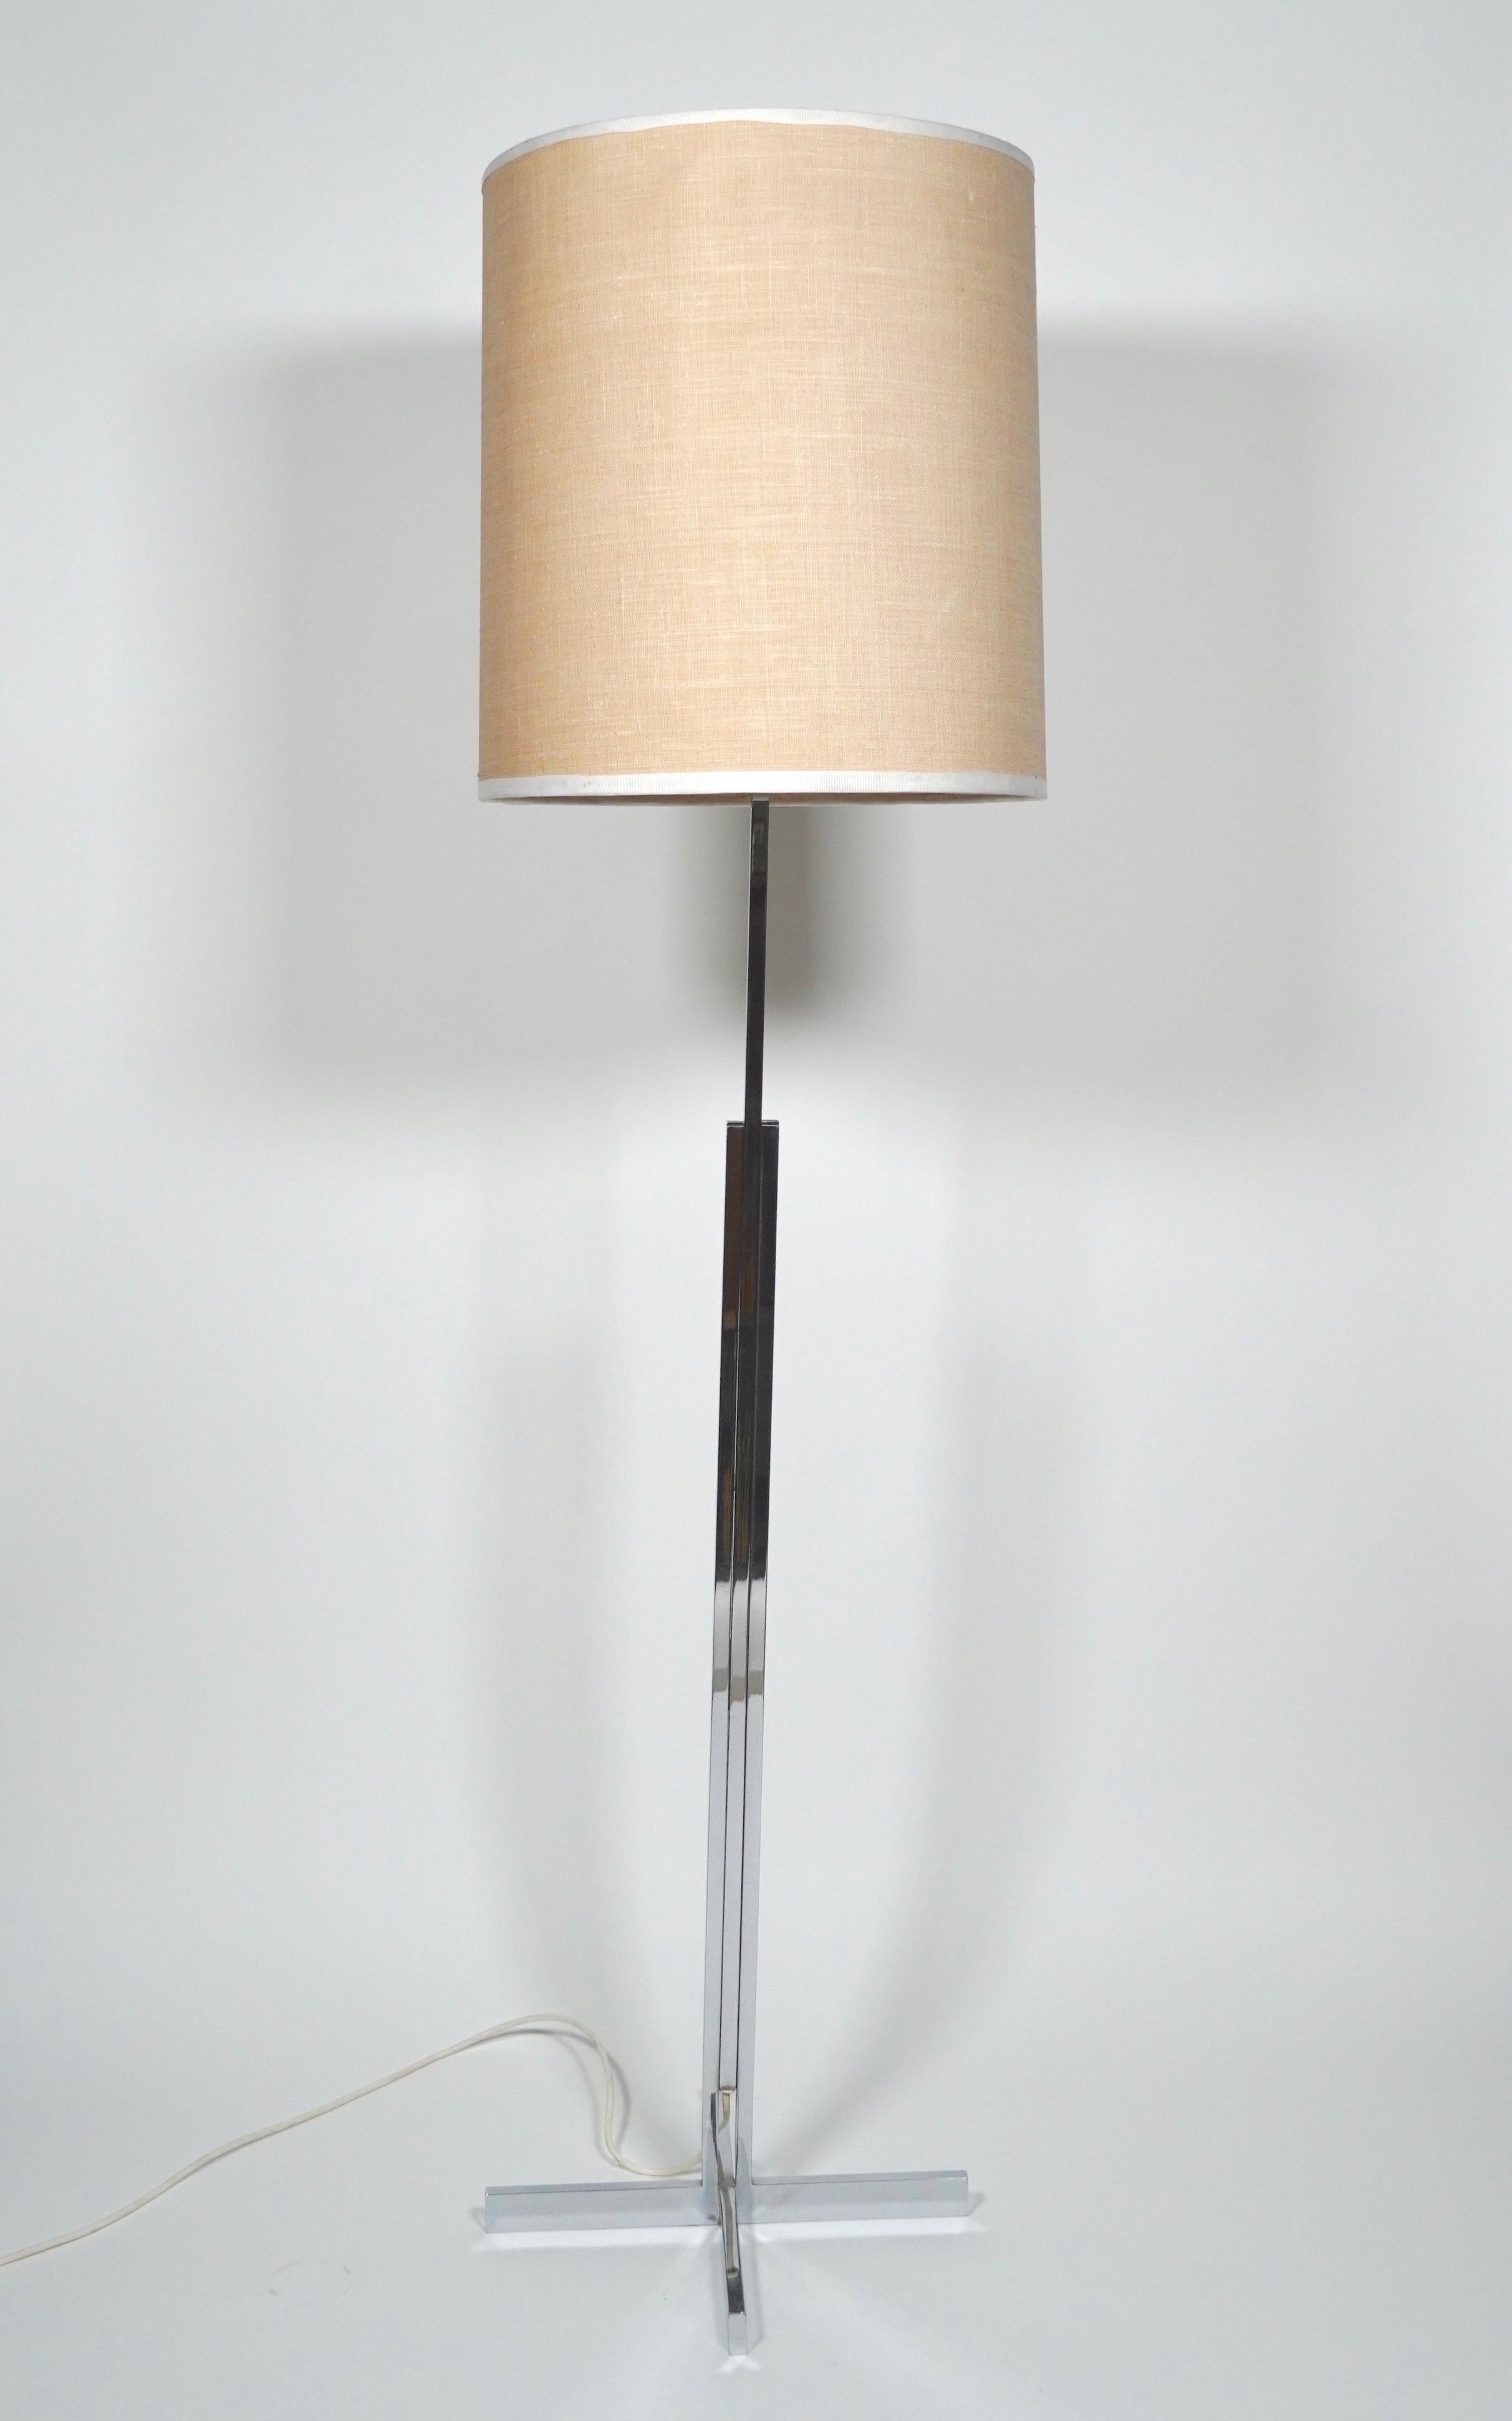 Stehlampe im internationalen Stil aus Chrom und Leinen, ca. 1960er Jahre, aus der Schweiz. Bestehend aus einem dreiteiligen Chromrahmen aus Vierkantrohr, der auf einem rechteckigen Sockel mit vier Punkten ruht und ein schlankes Profil bildet. Der